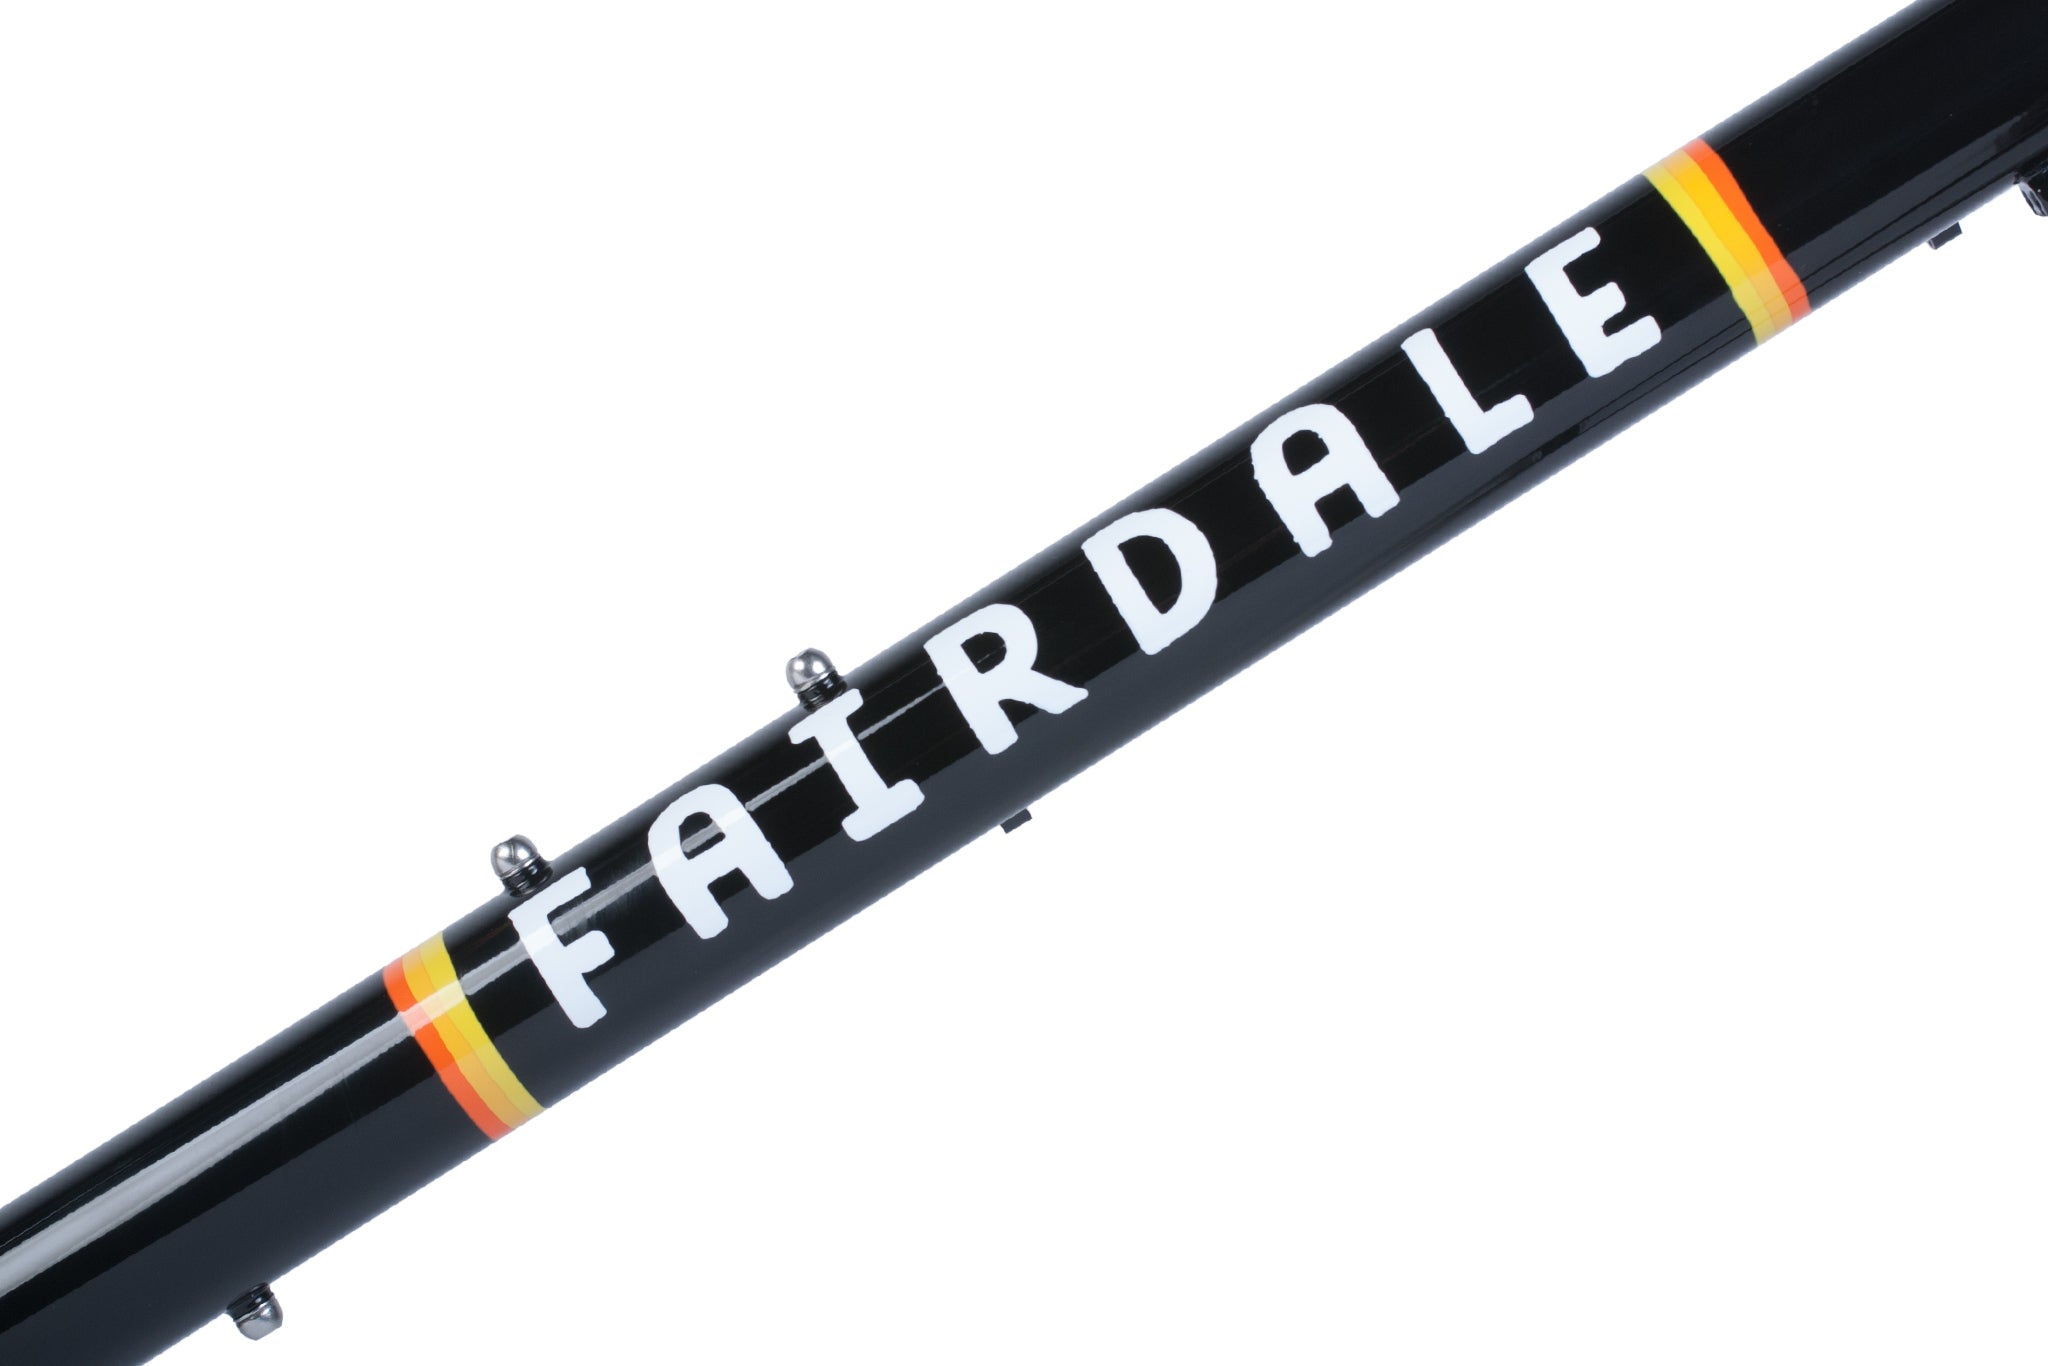 Fairdale Rockitship Gravel Frame and ENVE CX Fork Kit (Black)